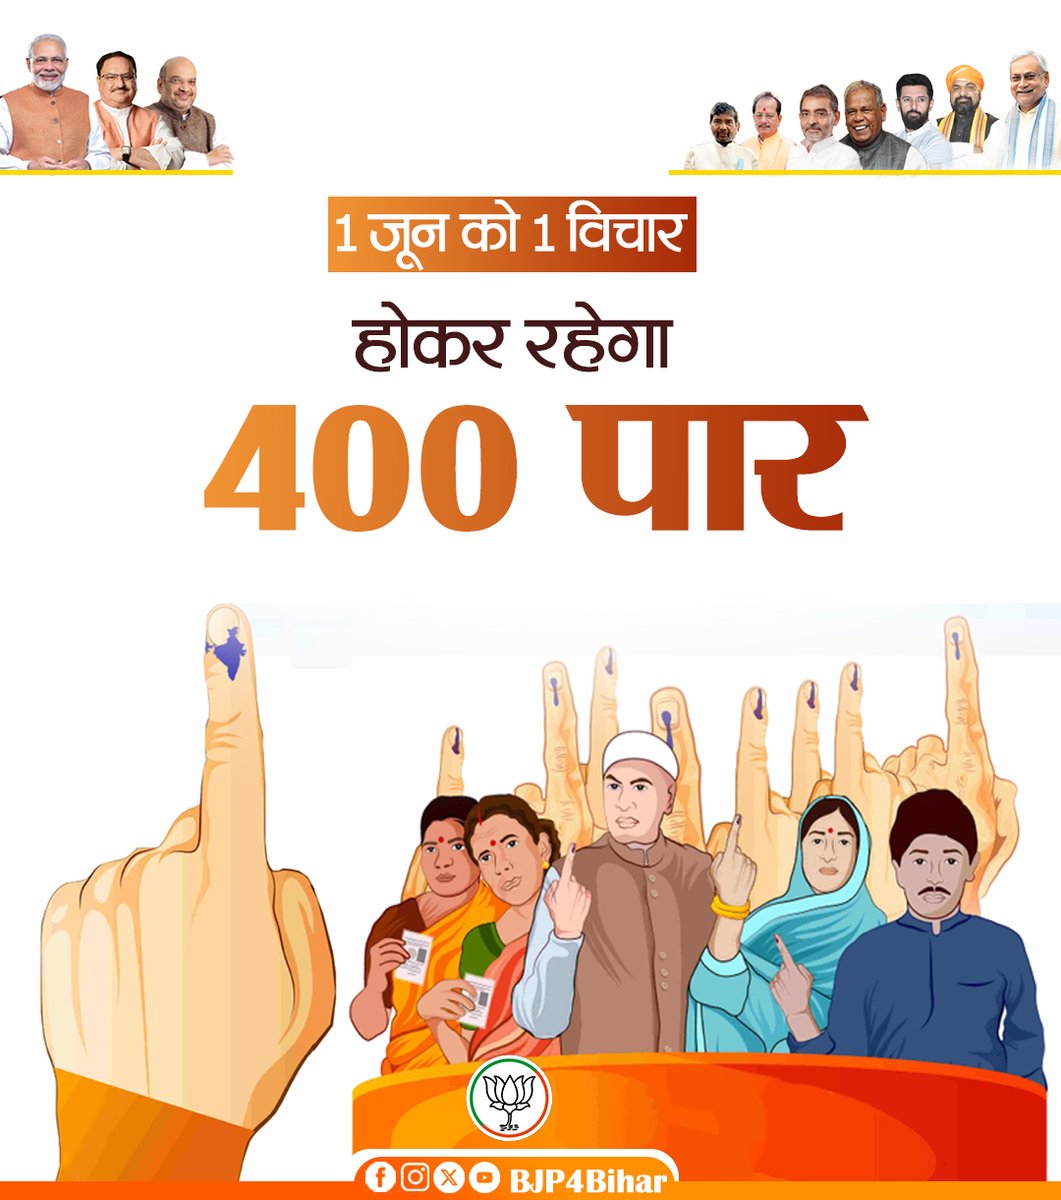 1 जून को 1 विचार, होकर रहेगा 400 पार। #ModiAgain